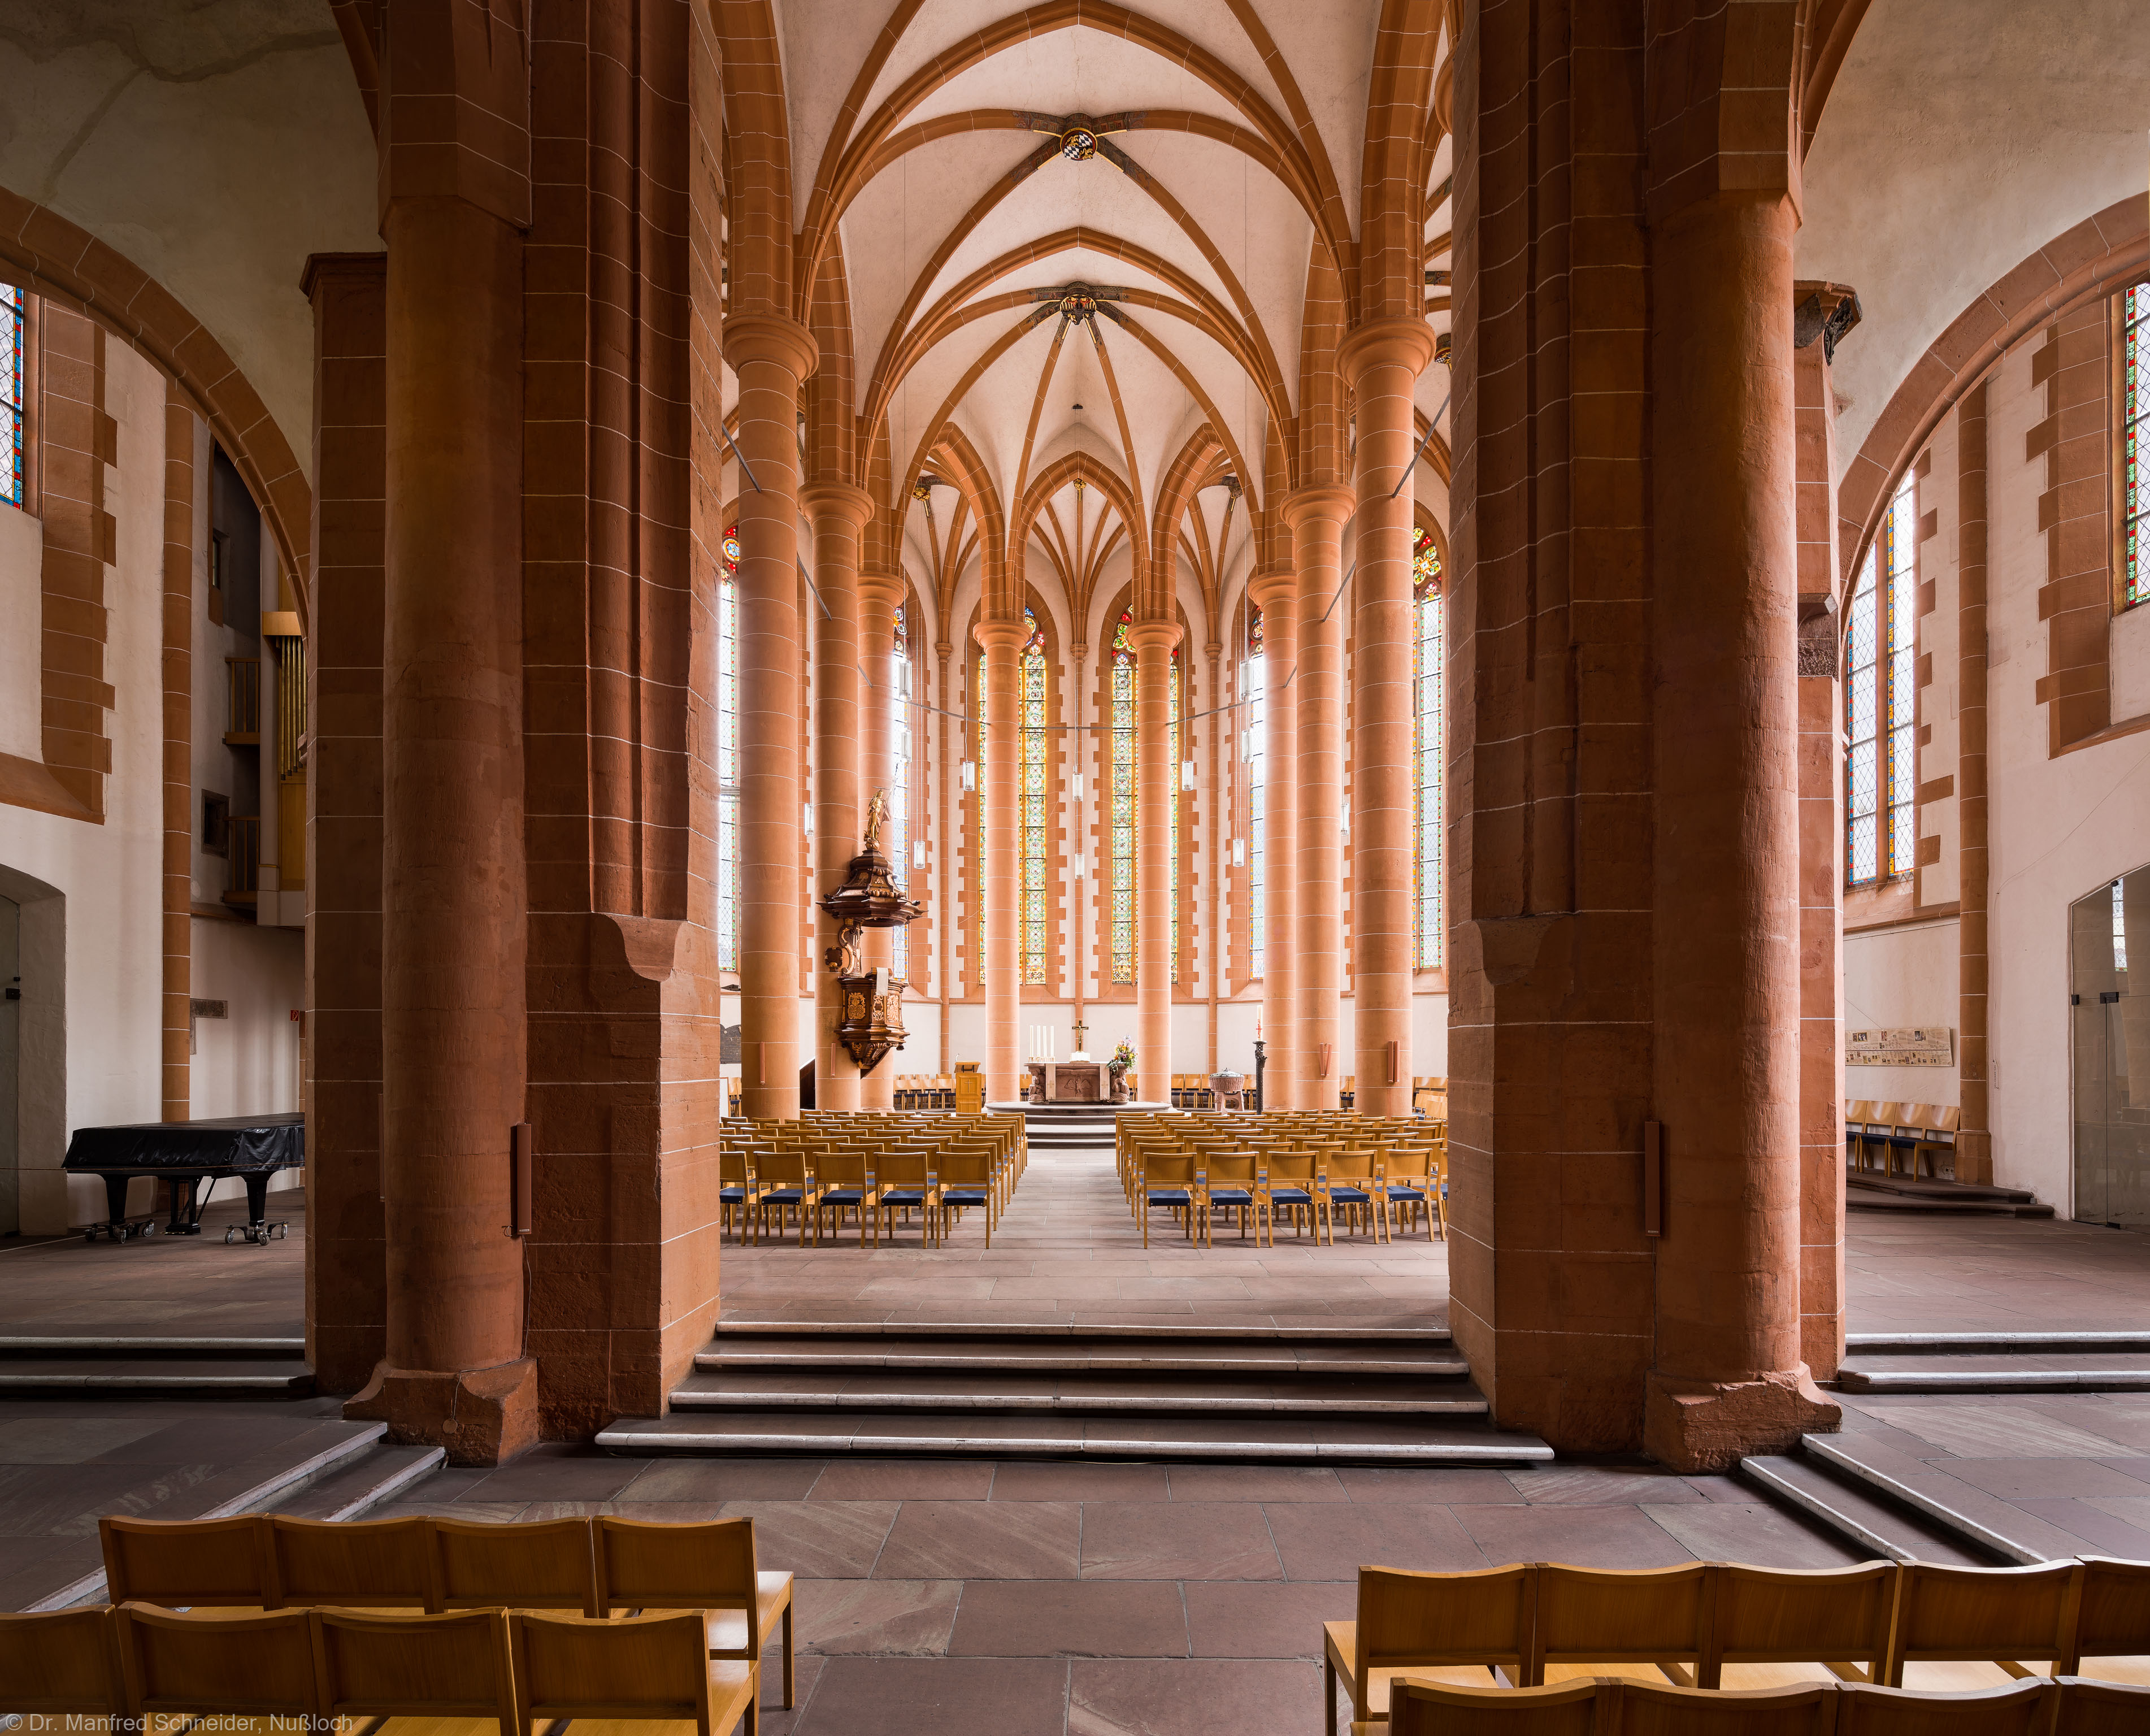 Heidelberg - Heiliggeistkirche - Triumphbogenpfeiler - Blick vom Mittelschiff auf den Triumphbogenpfeiler und in den Chor (aufgenommen im April 2013, am späten Vormittag)